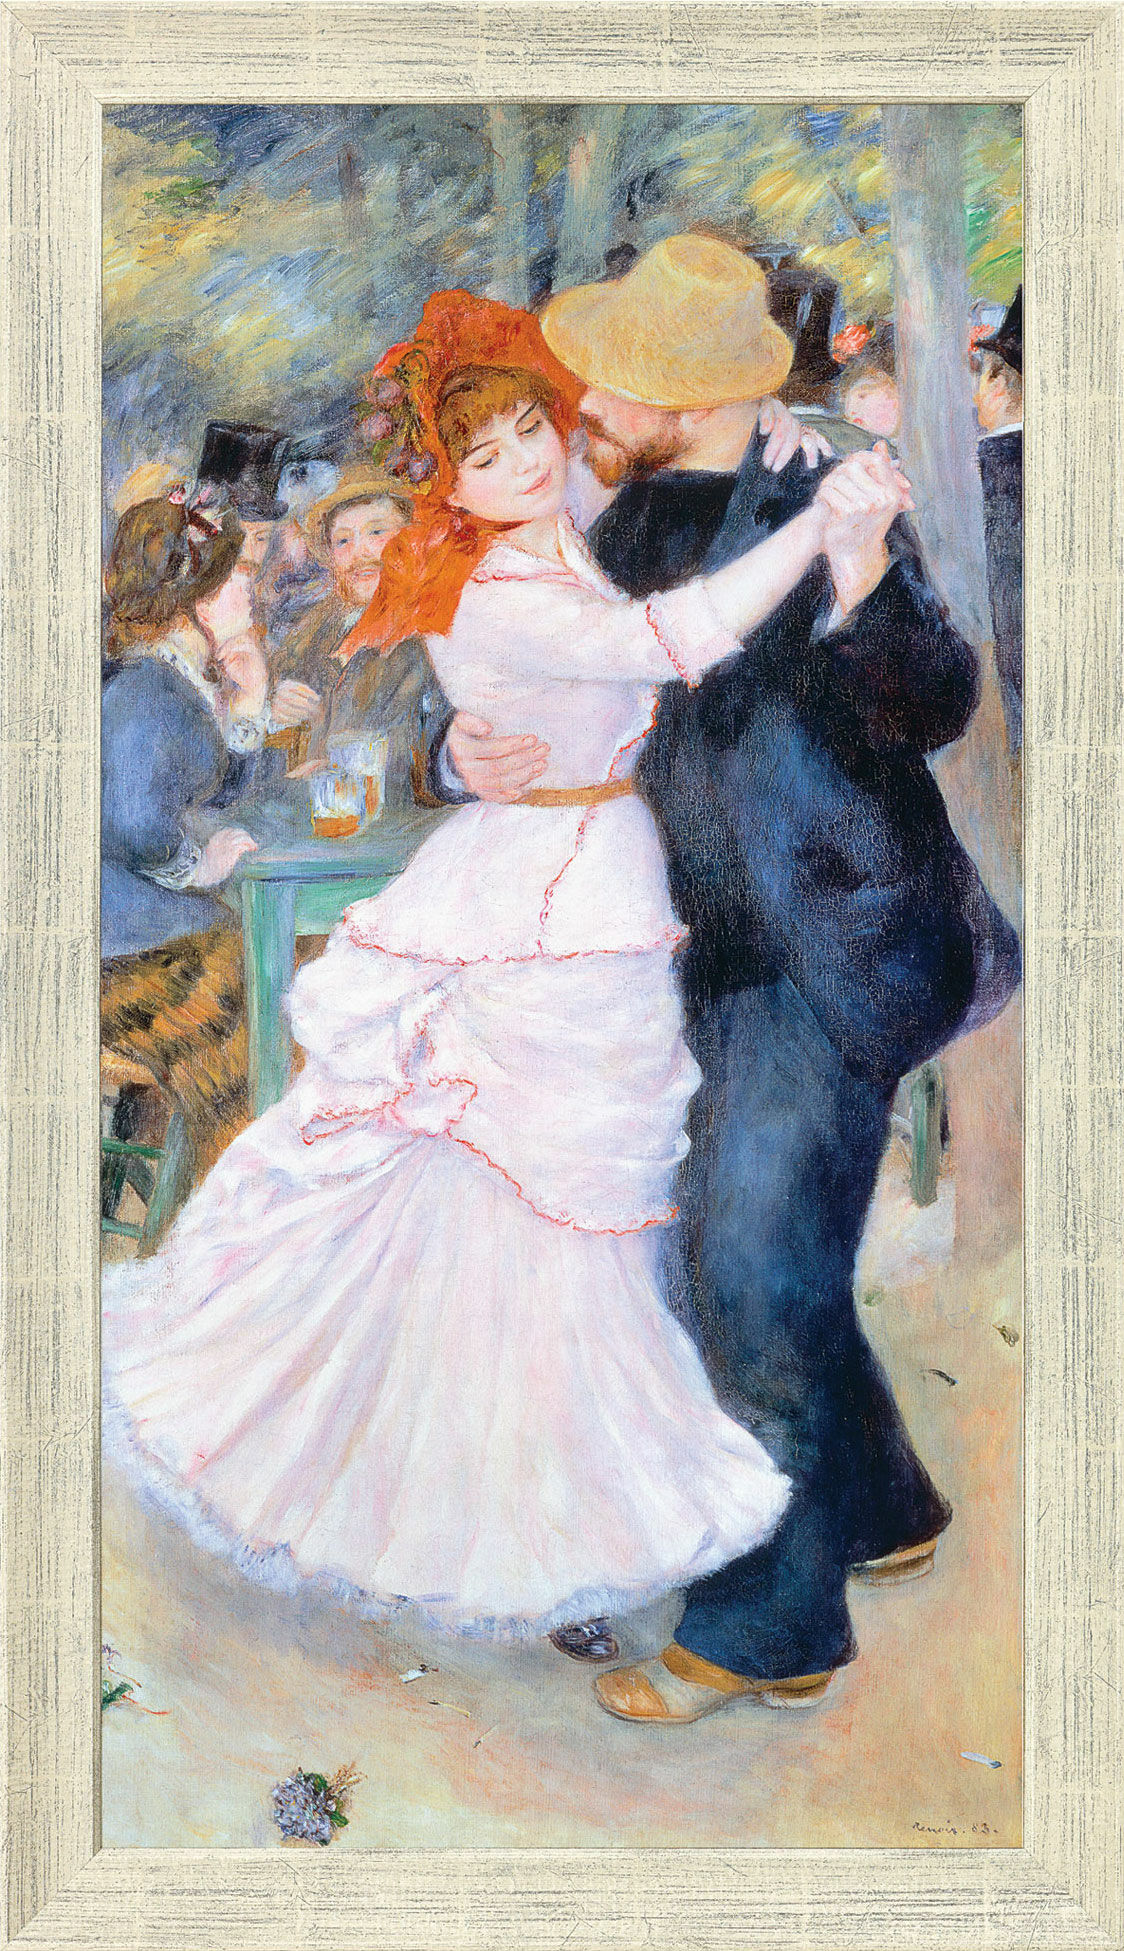 Bild "Tanz im Bougival" (1883), gerahmt von Auguste Renoir